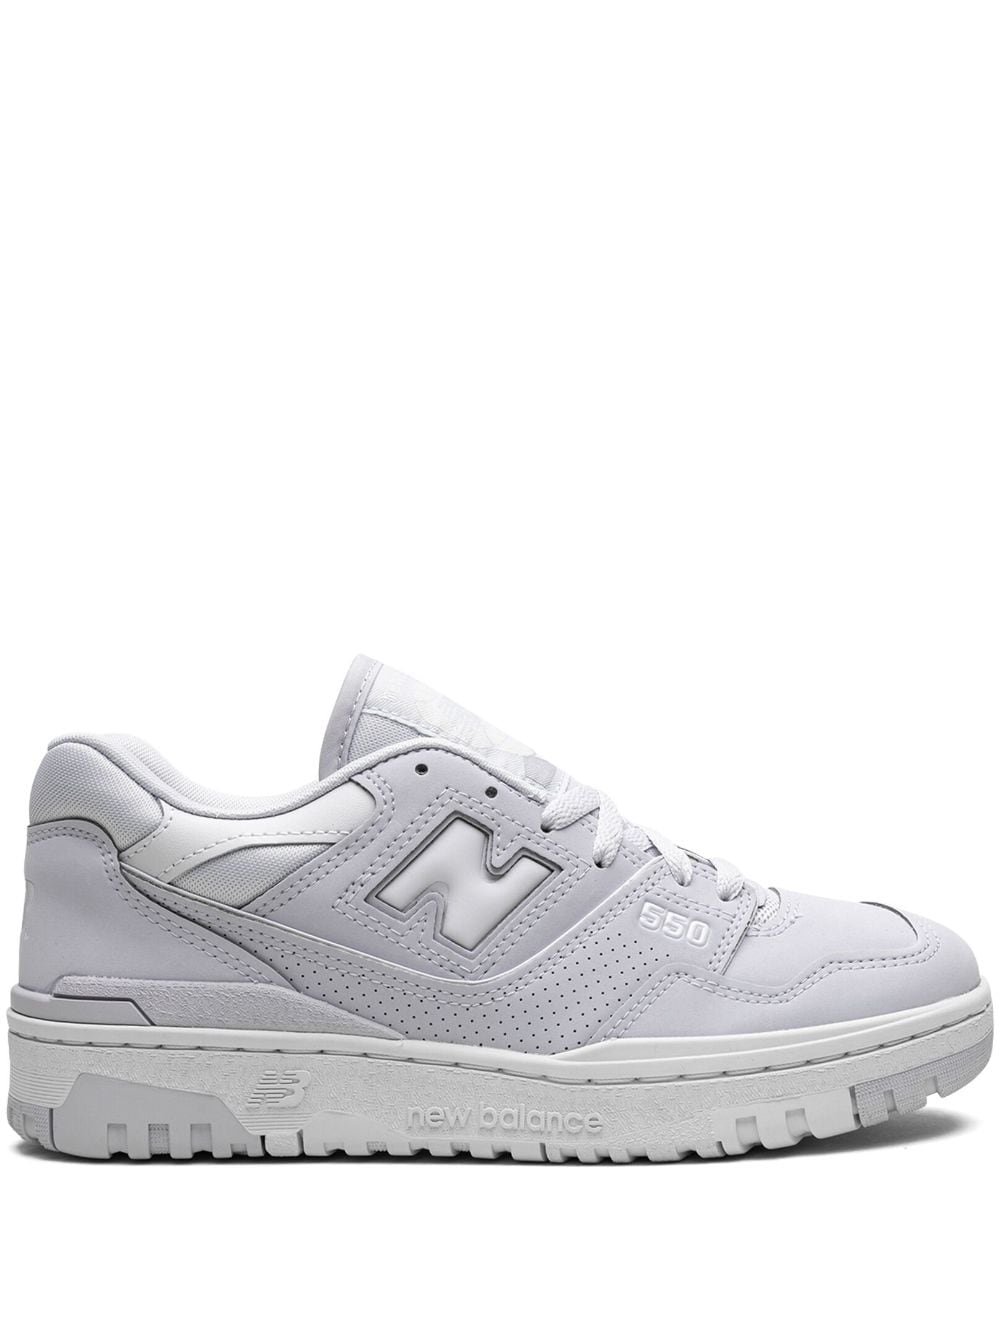 New Balance 550 "Granite" sneakers - White